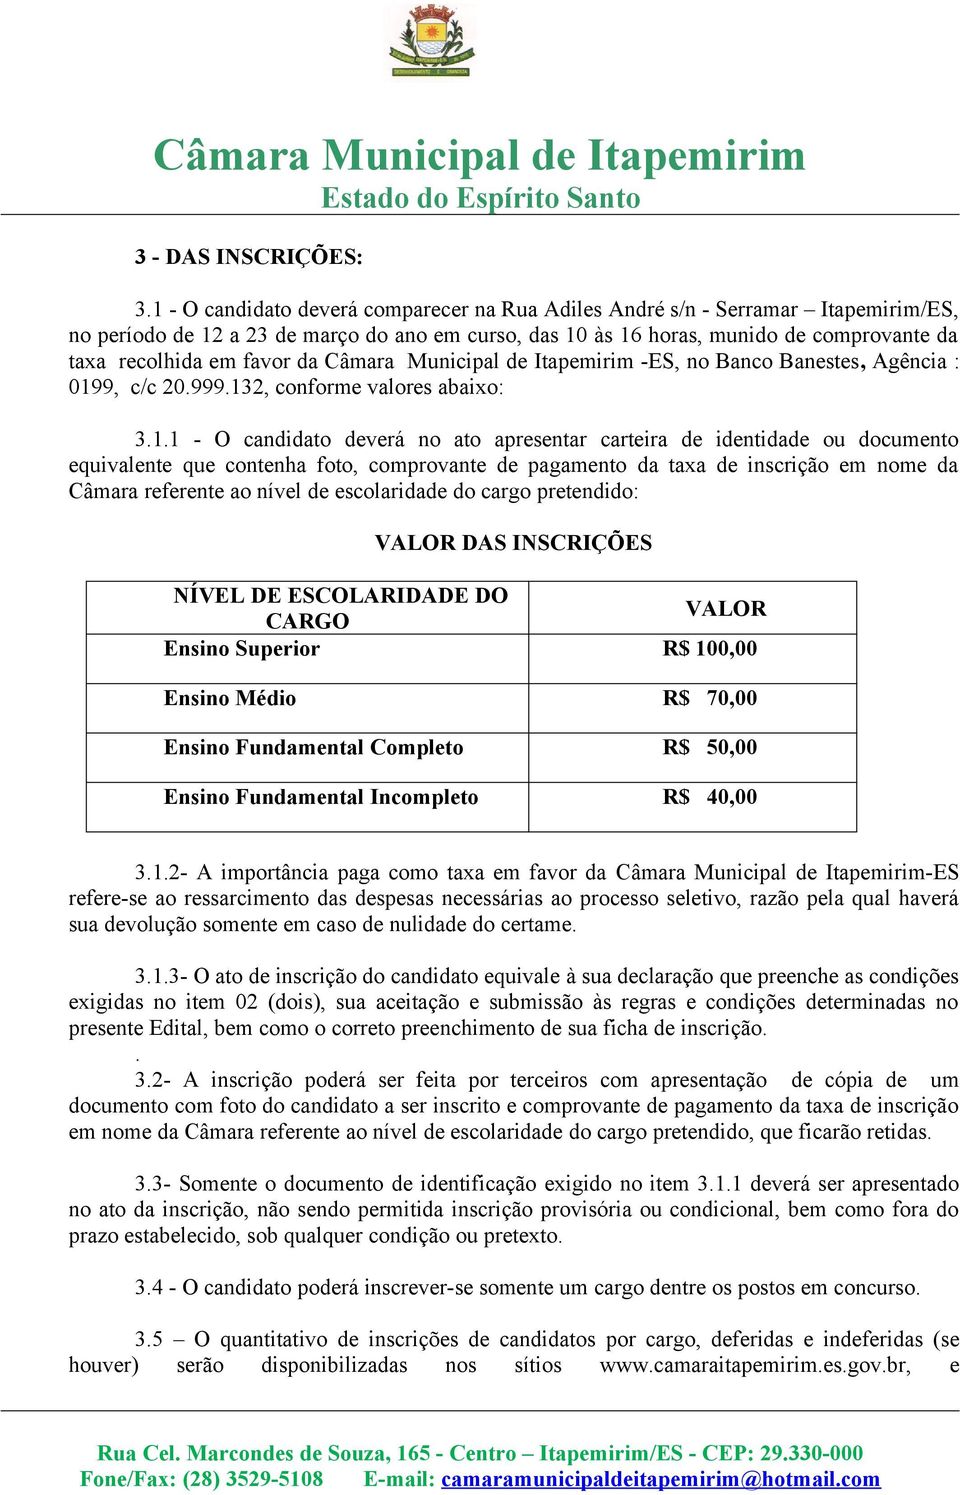 favor da Câmara Municipal de Itapemirim -ES, no Banco Banestes, Agência : 019